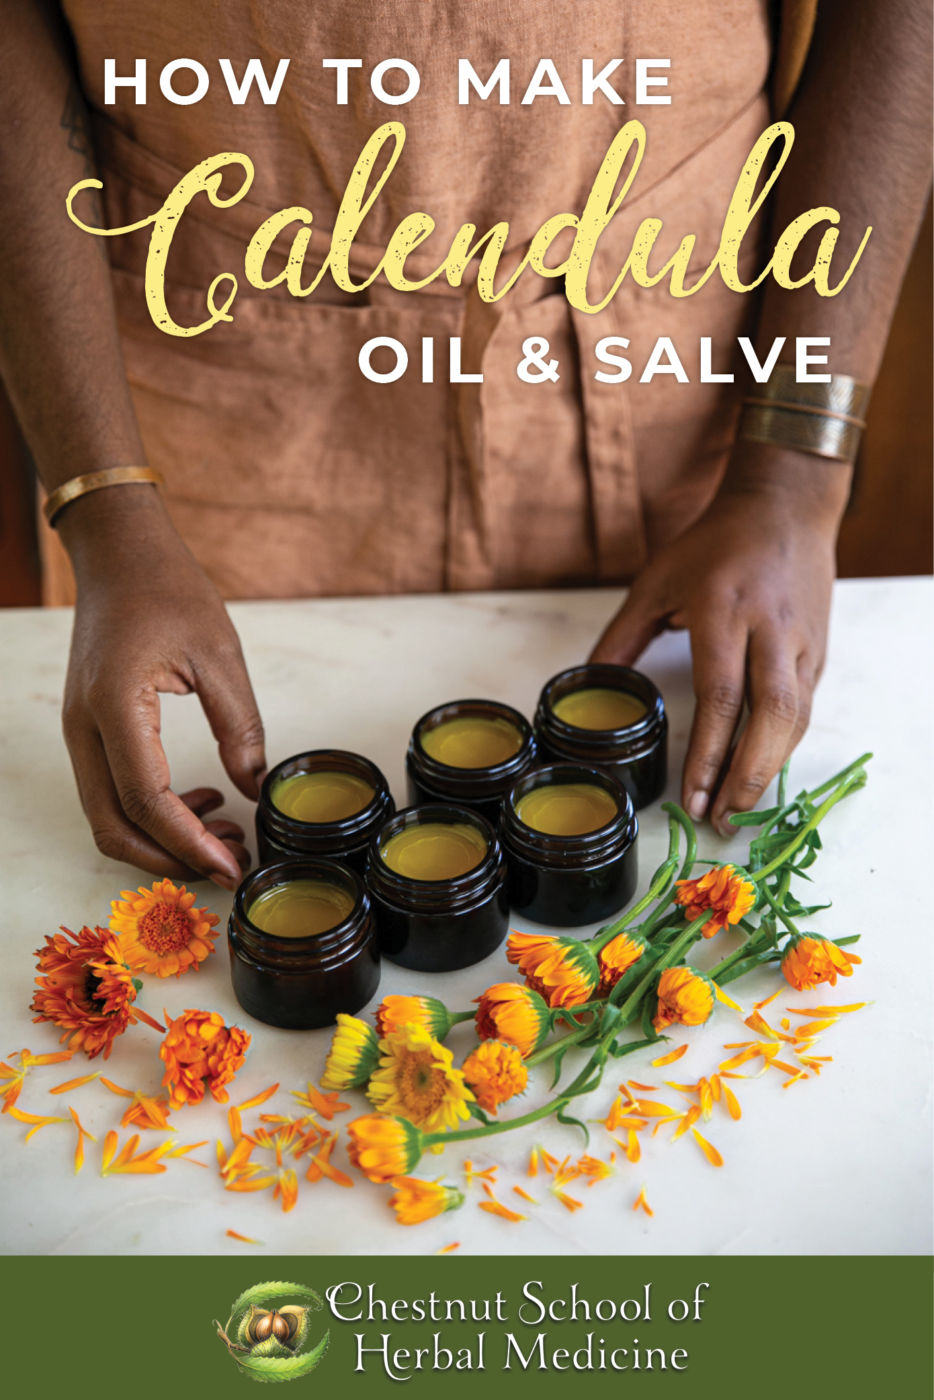 How to make calendula oil & salve.